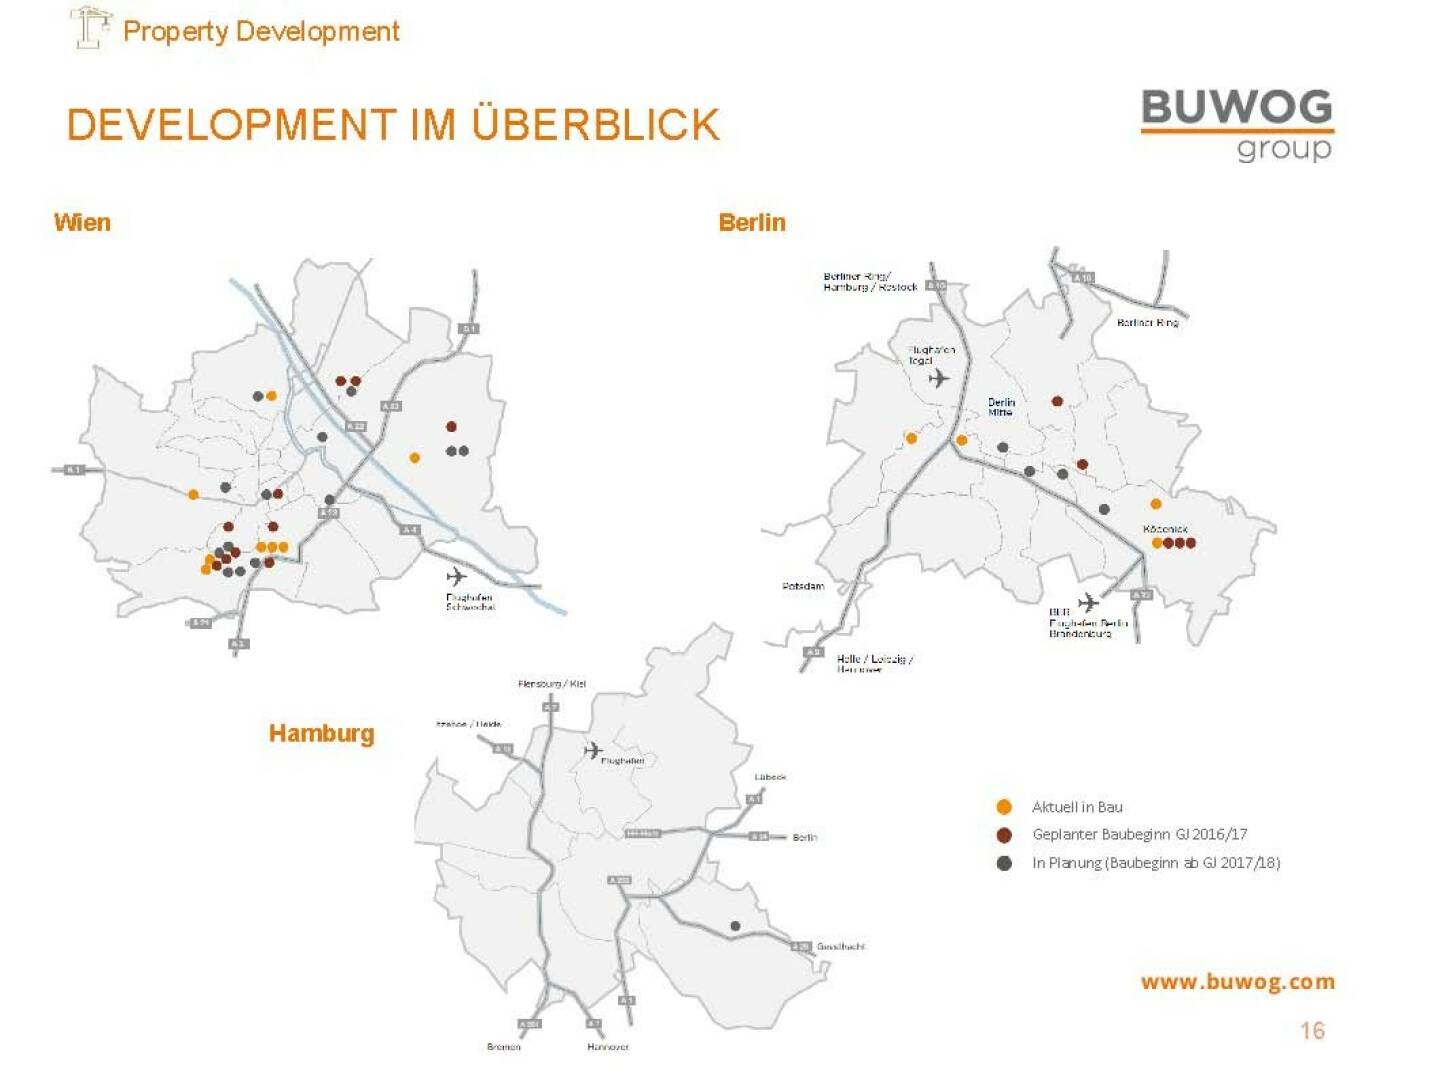 Buwog Group - Development im Überblick